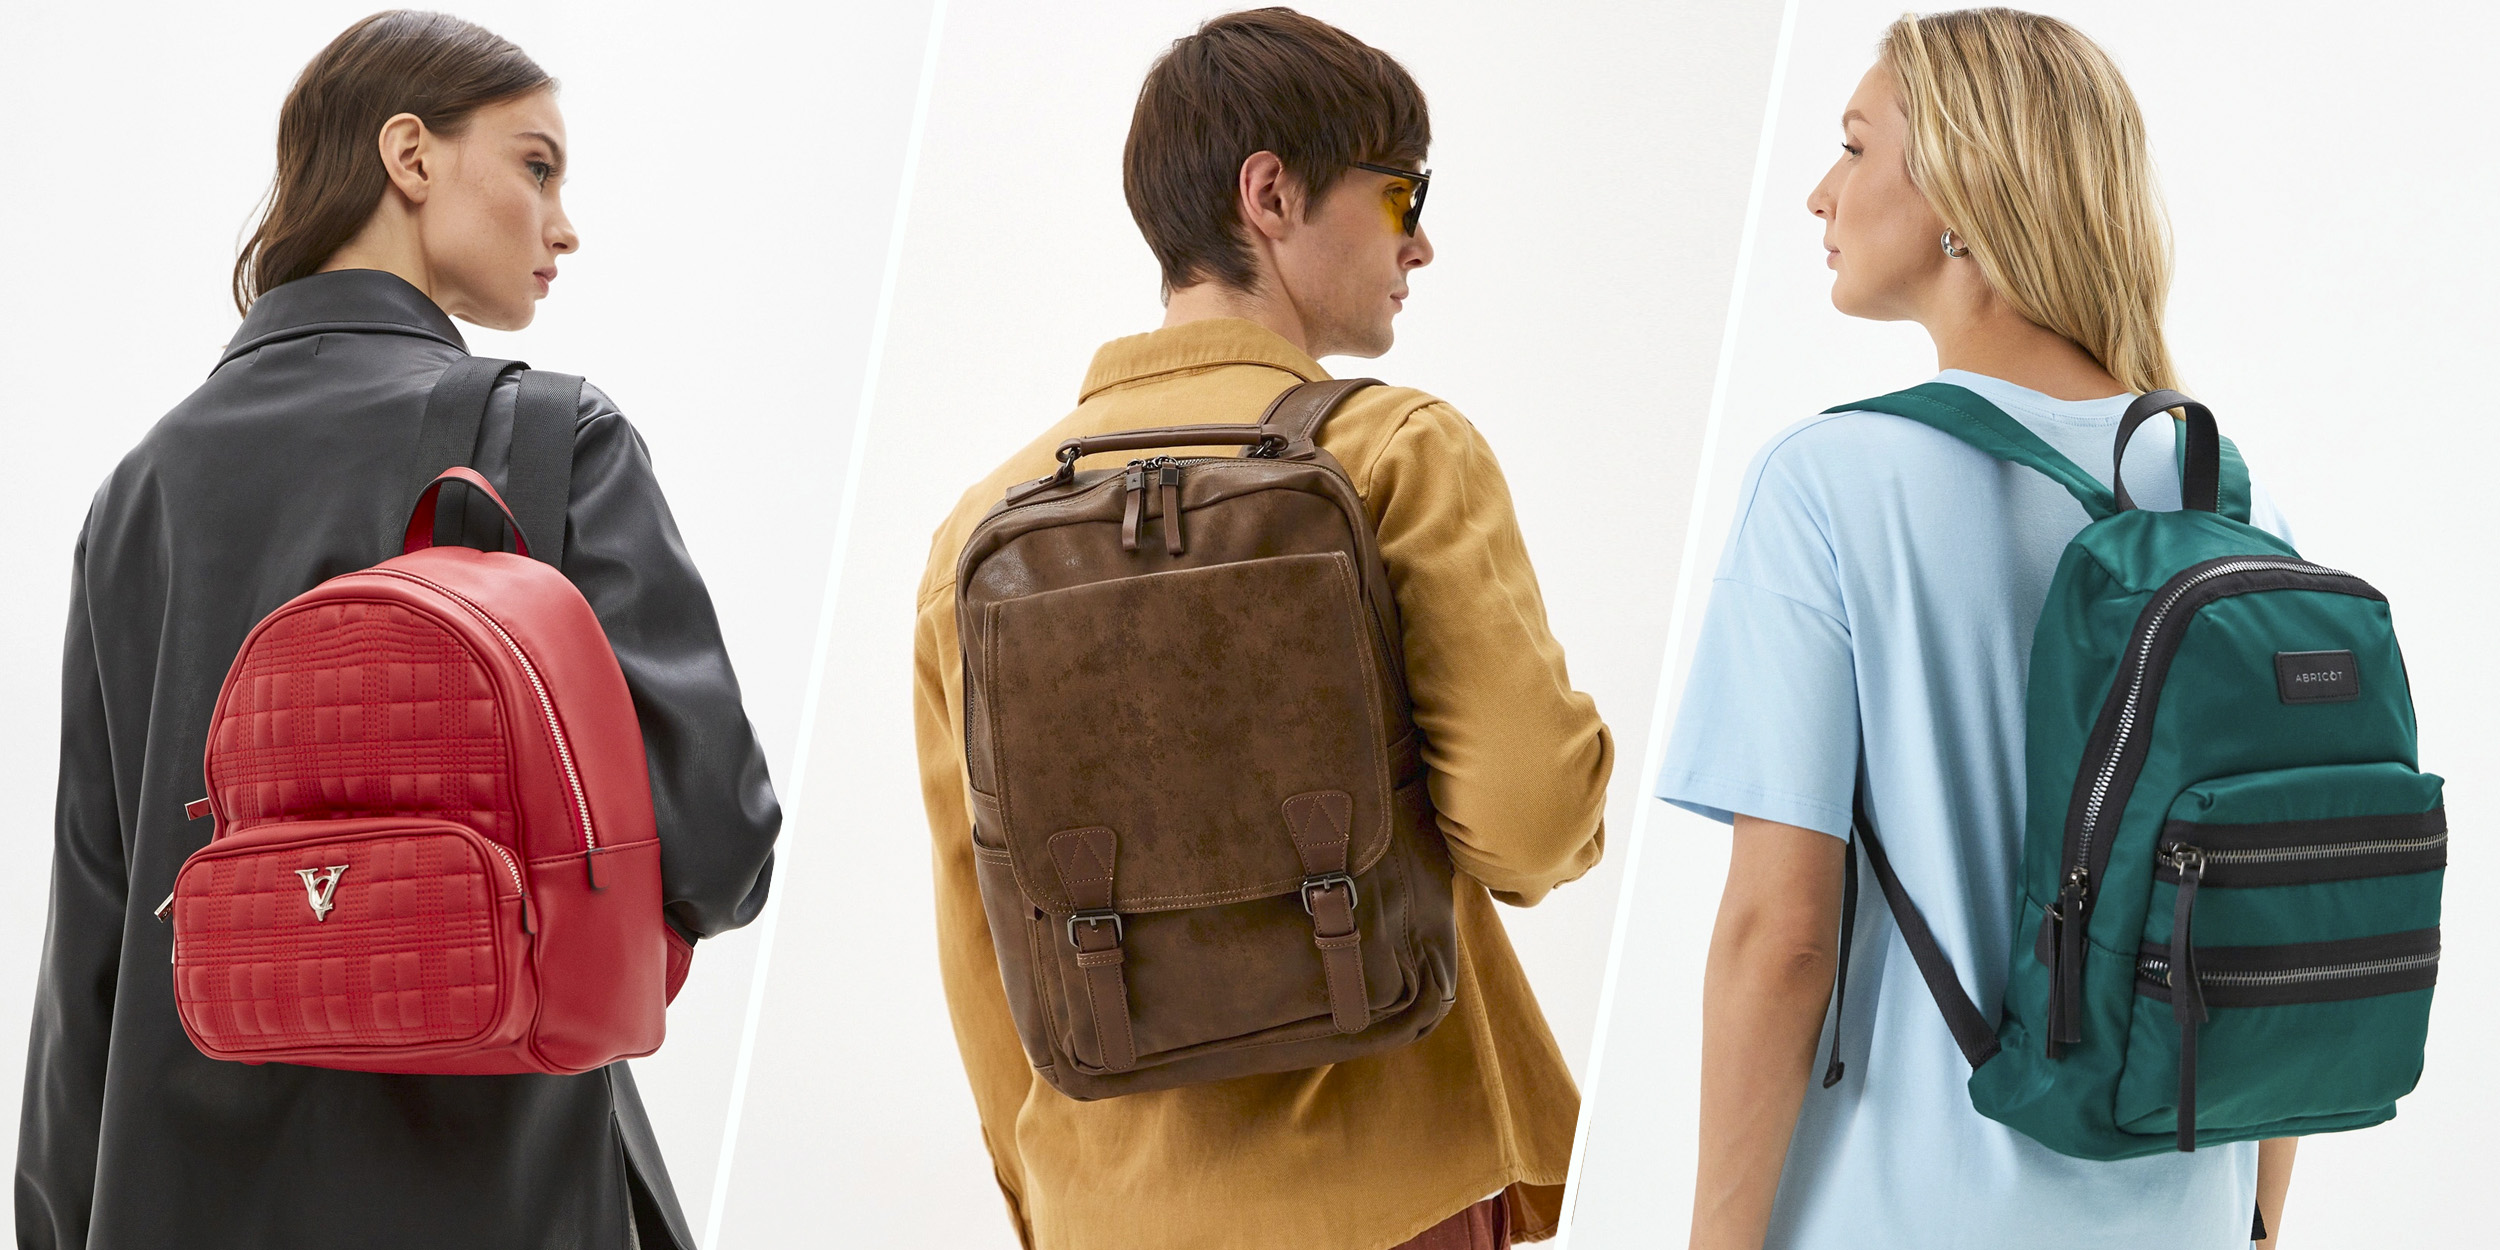 Купить кожаный городской рюкзак — самые модные цвета вашего лука